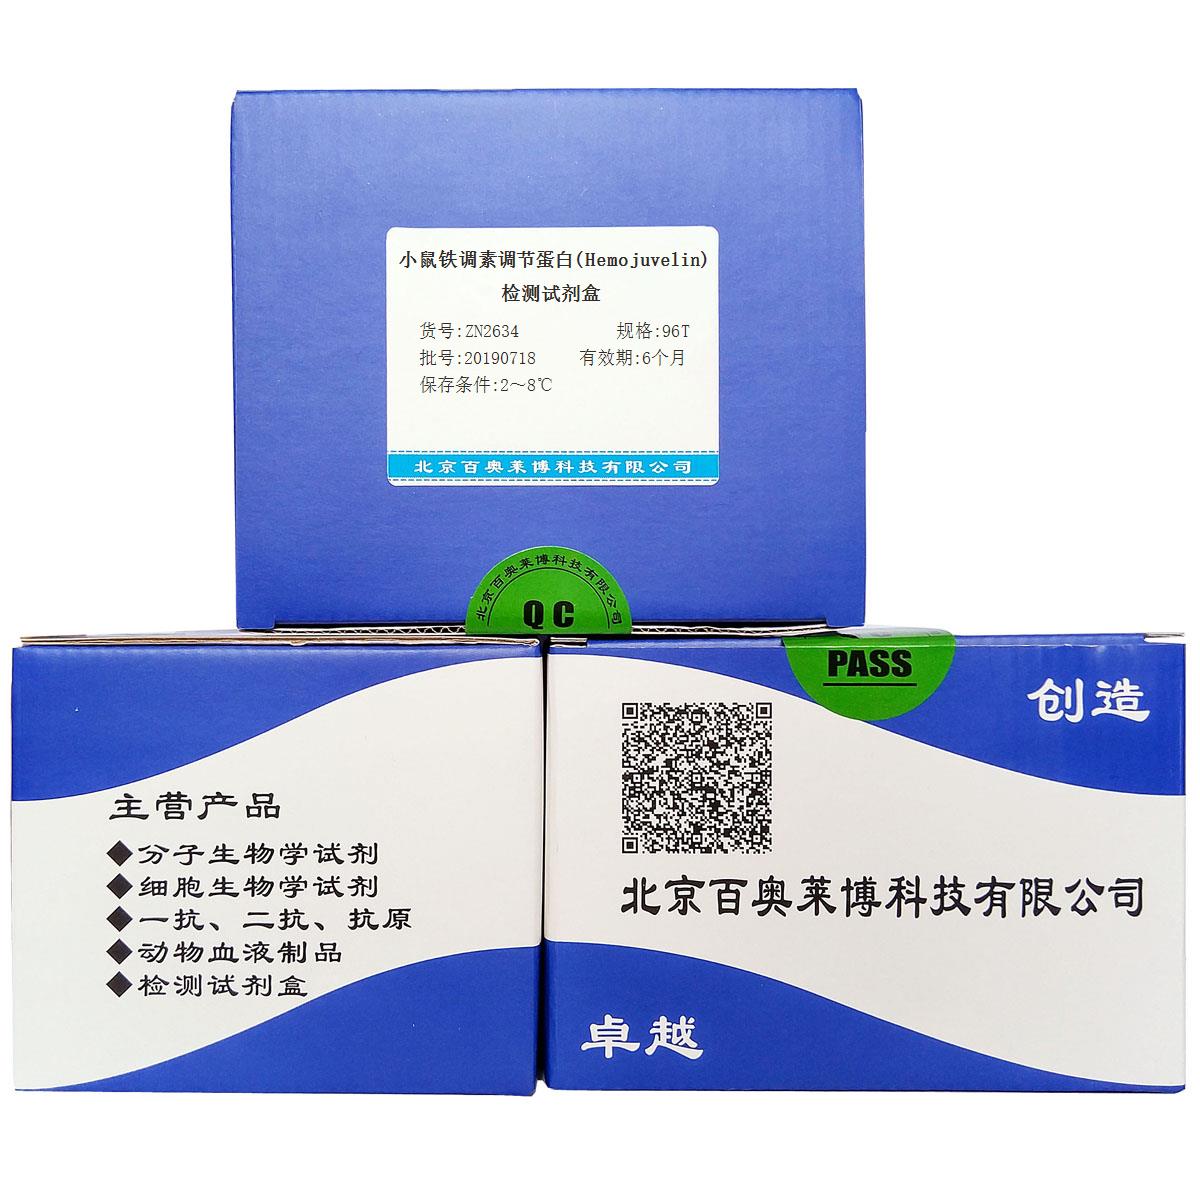 小鼠铁调素调节蛋白(Hemojuvelin)检测试剂盒